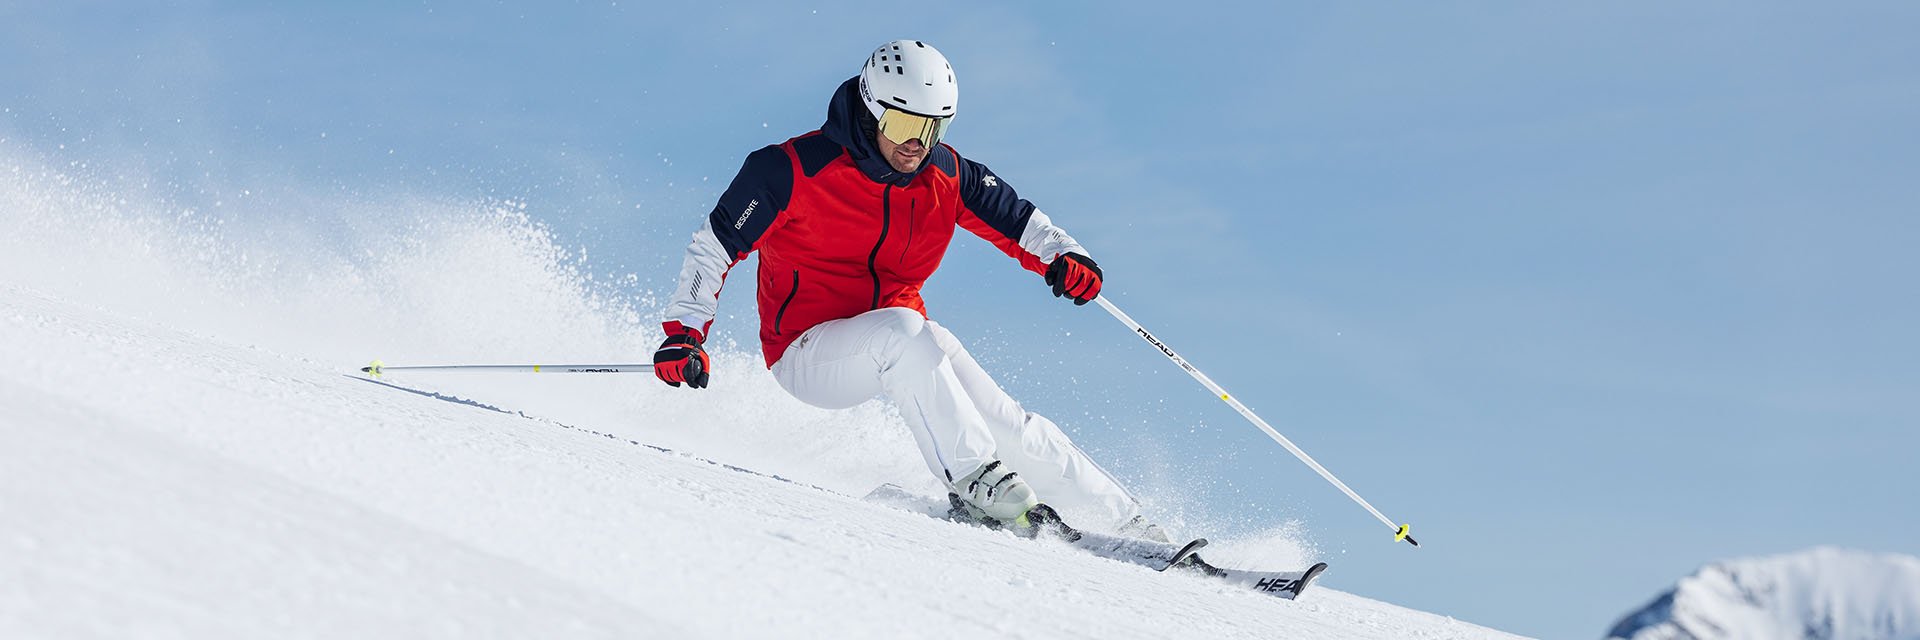 Skifahren für Anfänger - Tipps und Tricks